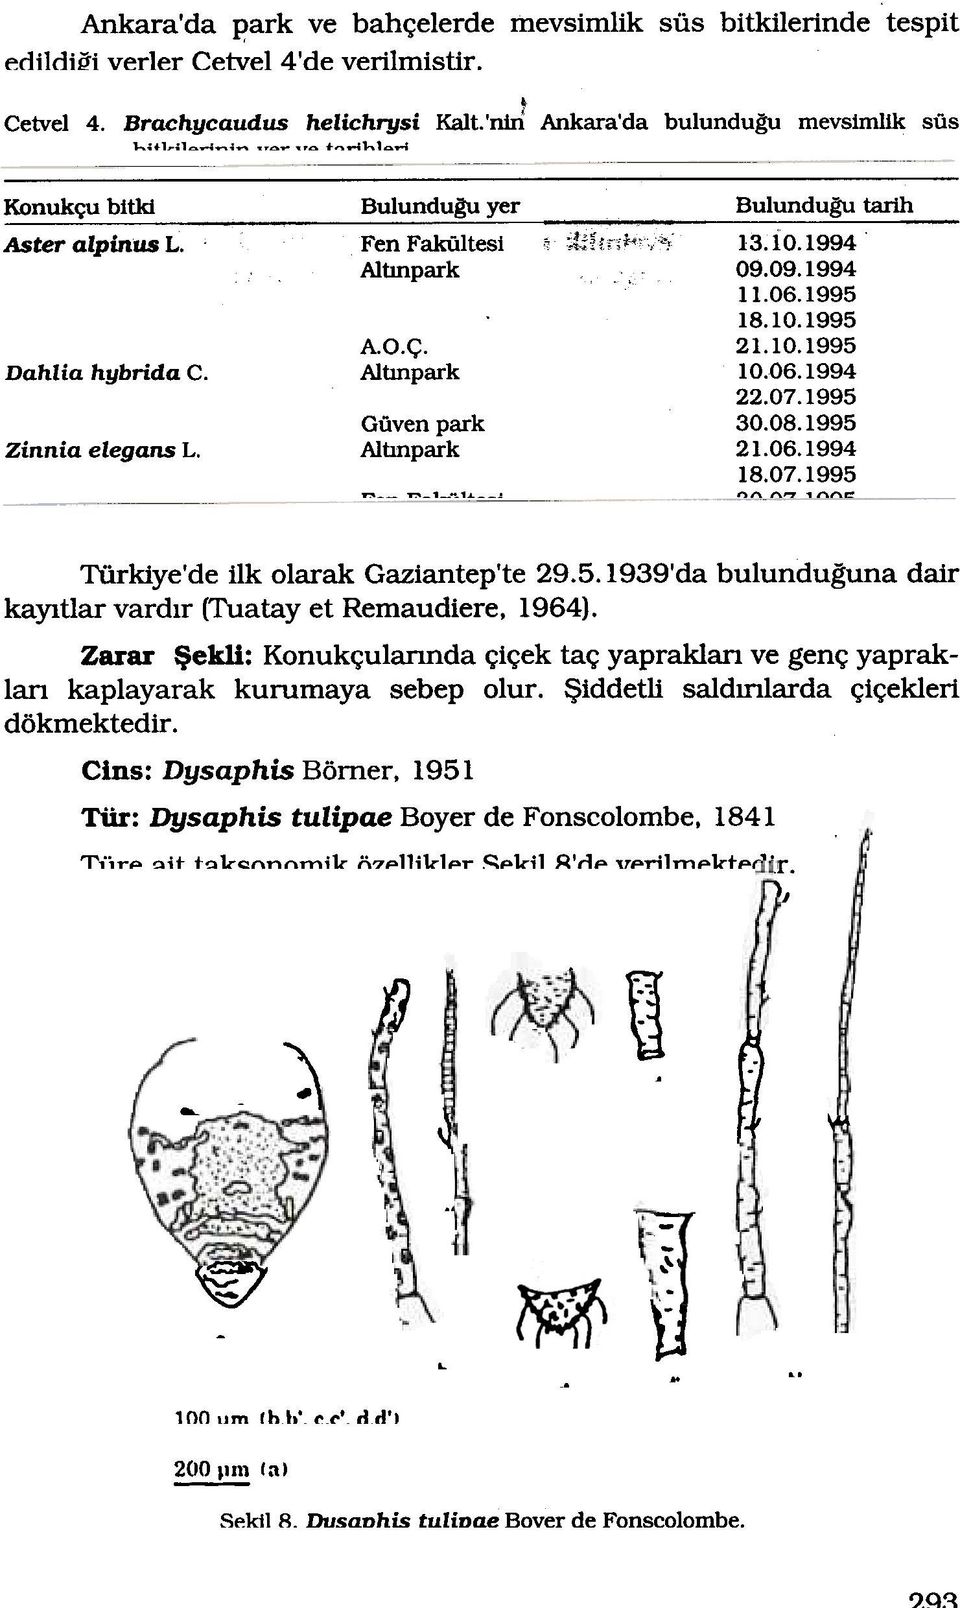 Albnpark 21.06.1994 18.07.1995 - -,---,-, "",, ""'" Türkiye'de ilk olarak Gaziantep'te 29.5. 1939'da bulunduguna dair kayltlar vardlr (Tuatay et Remaudiere, 1964).